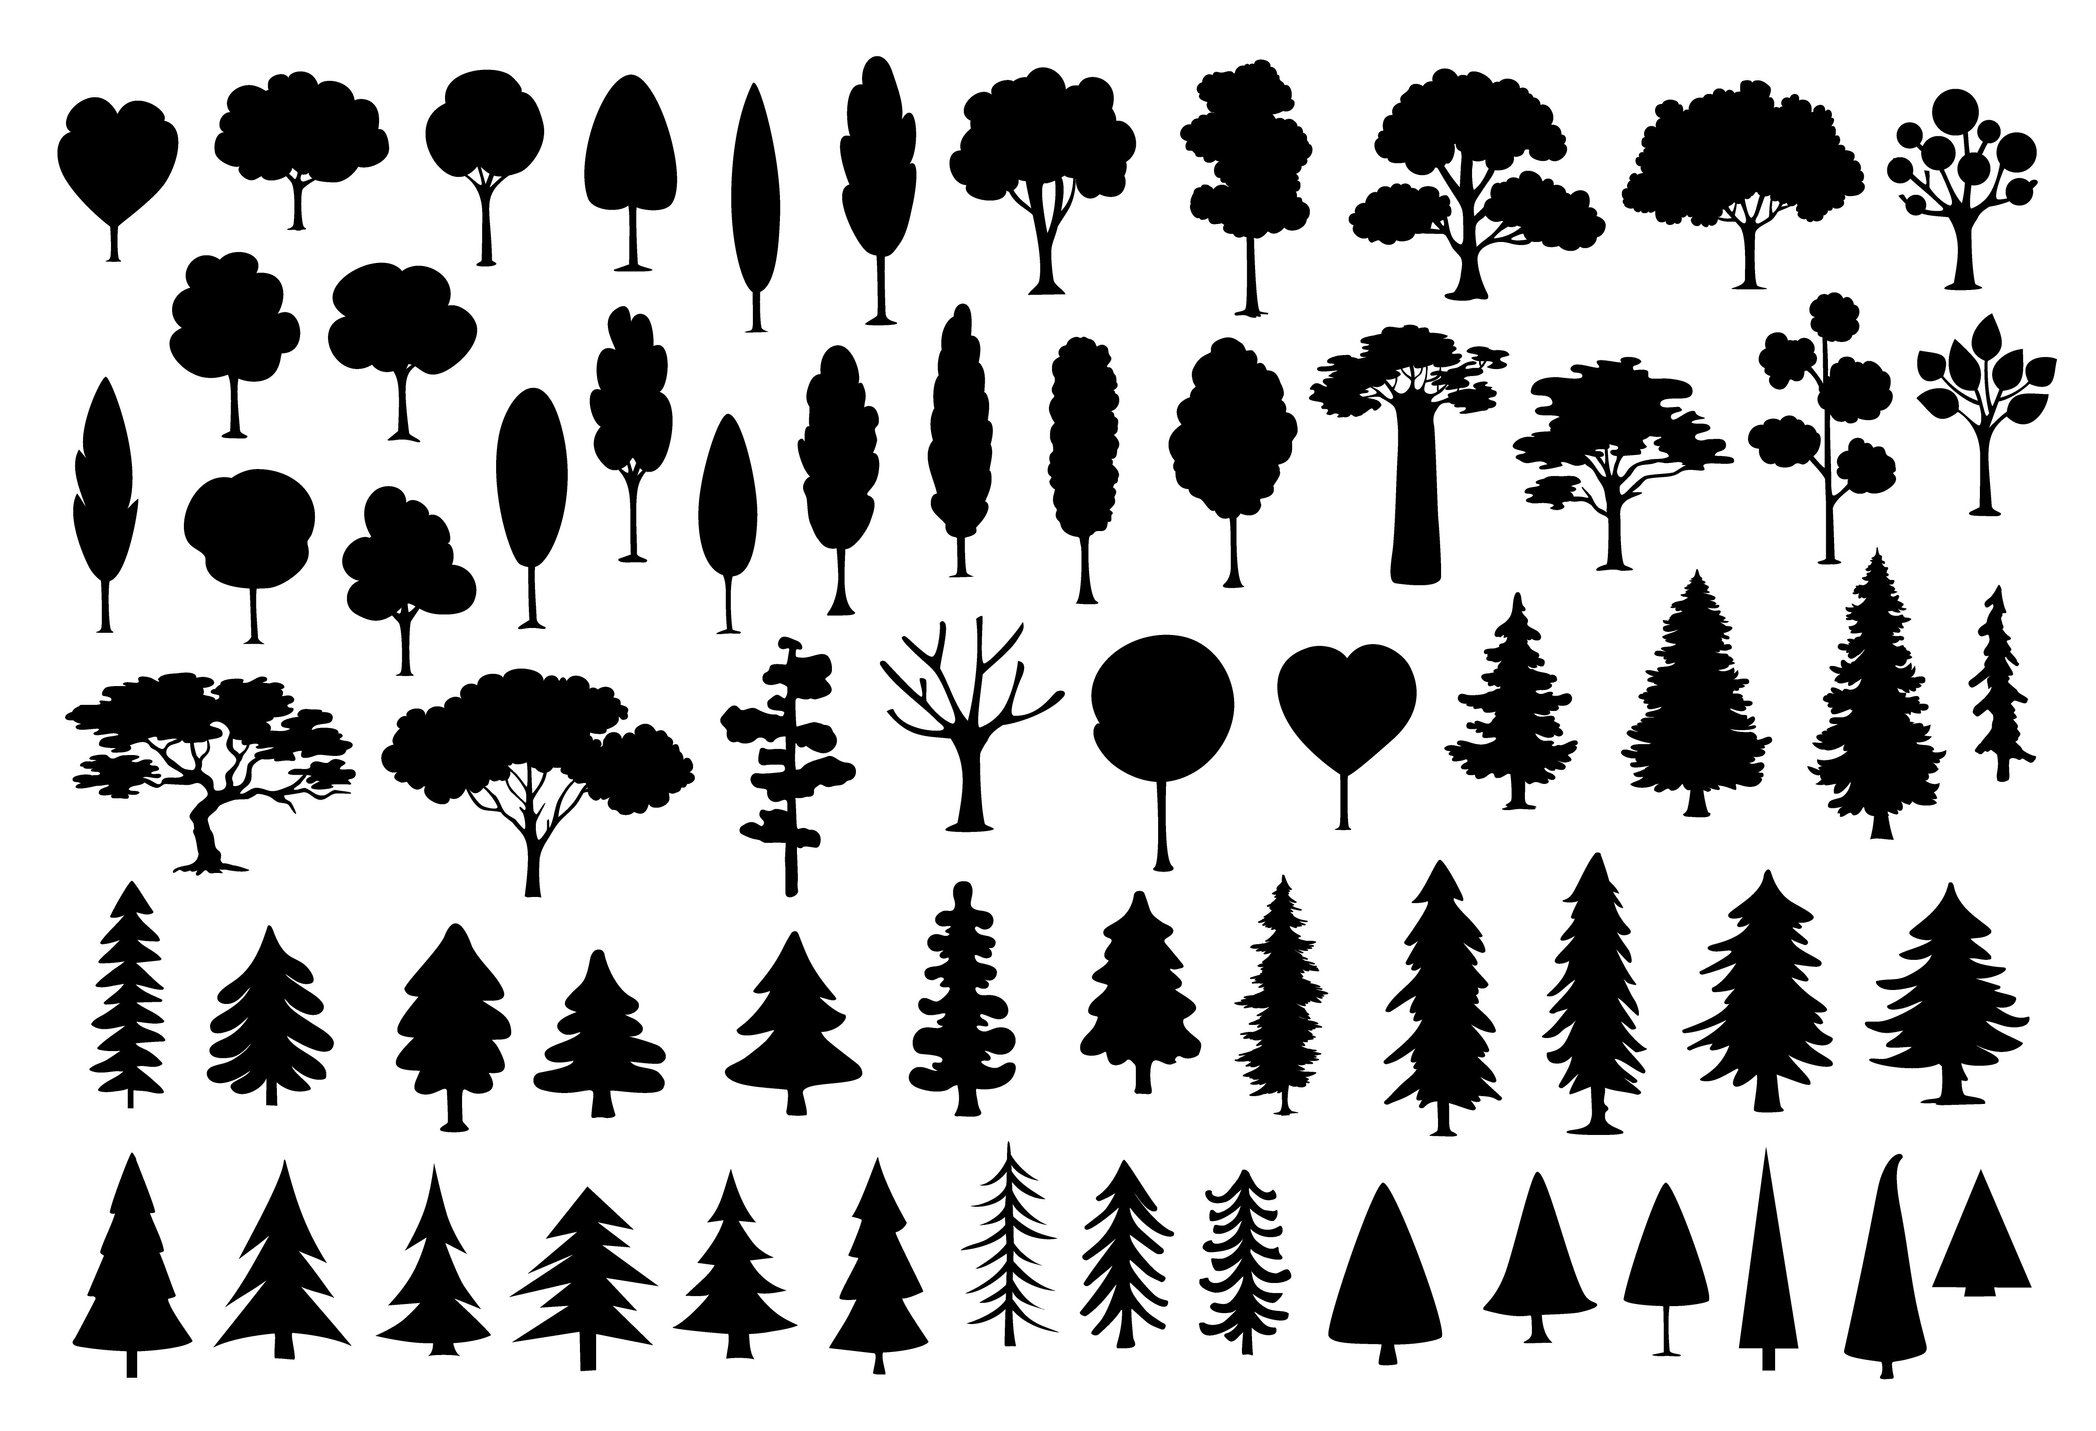 Una gráfica de tipos de árboles